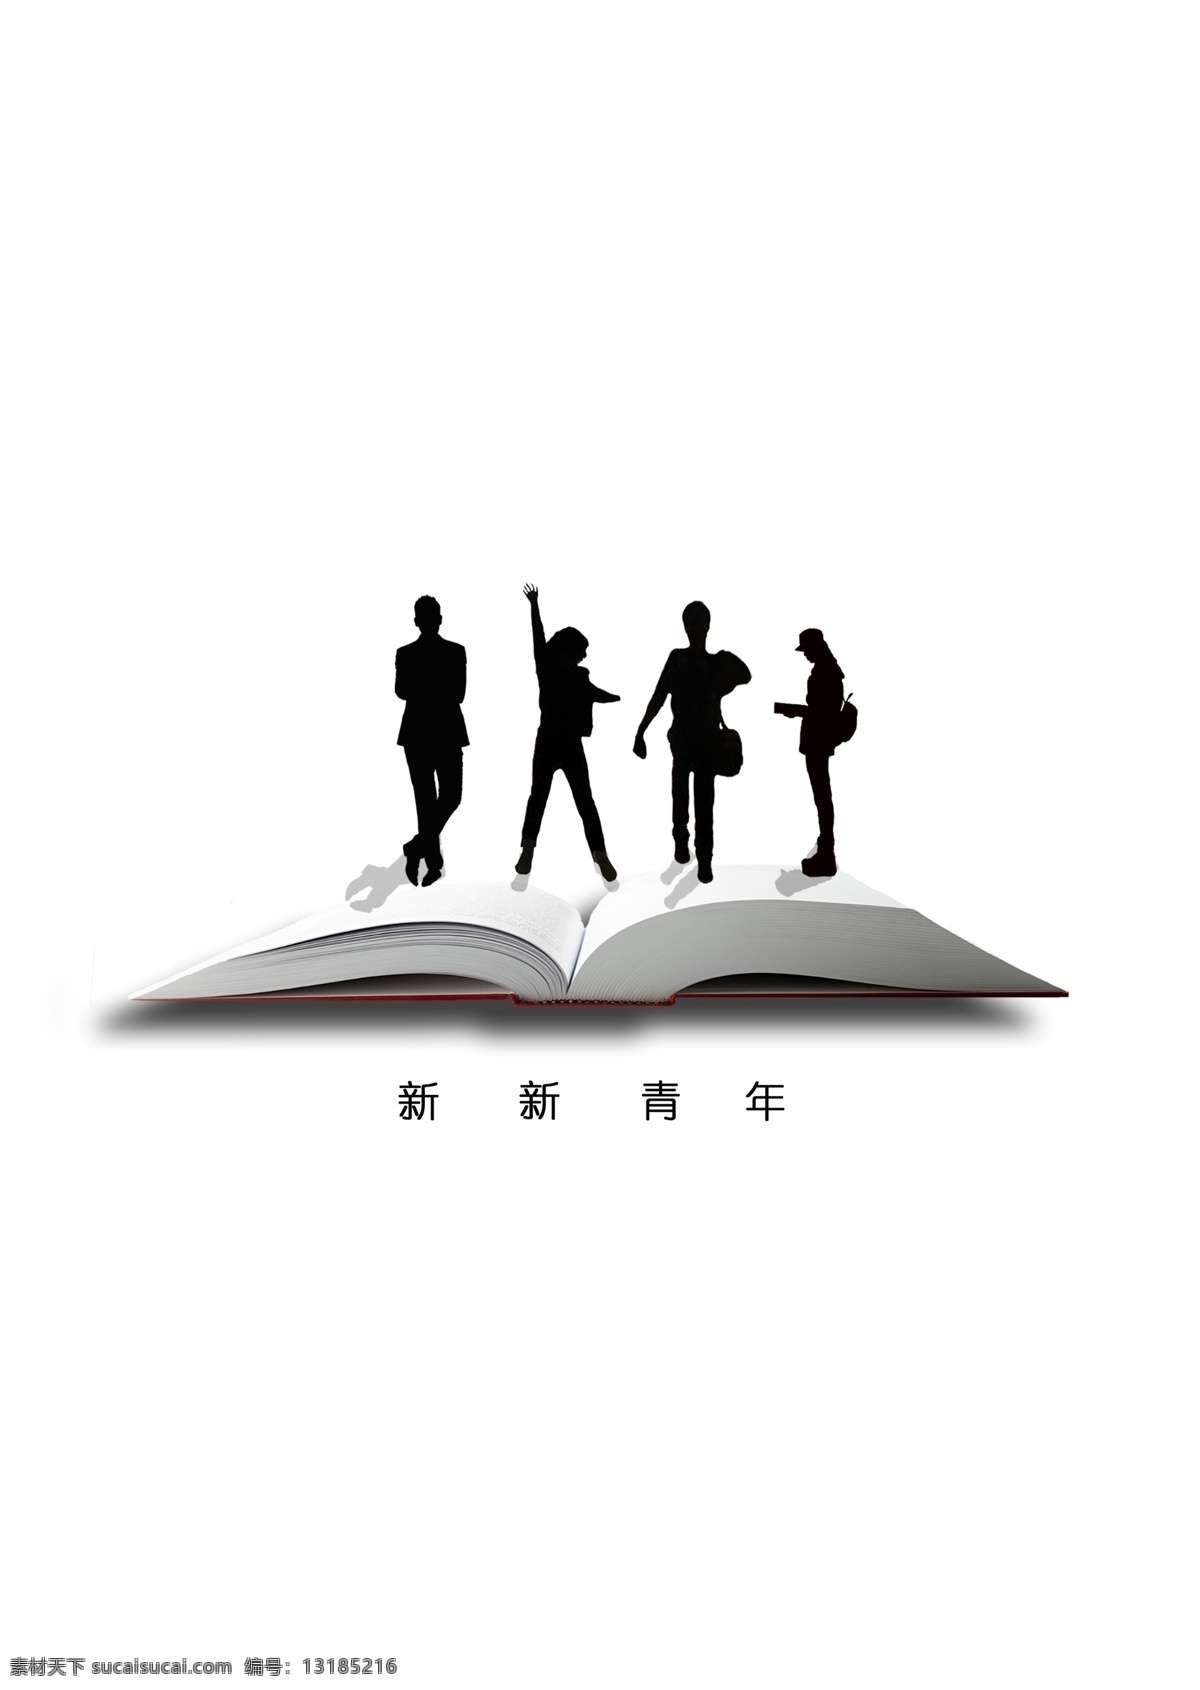 新新 青年 logo 人物 书籍 新新青年 logo设计 用于社团 白色